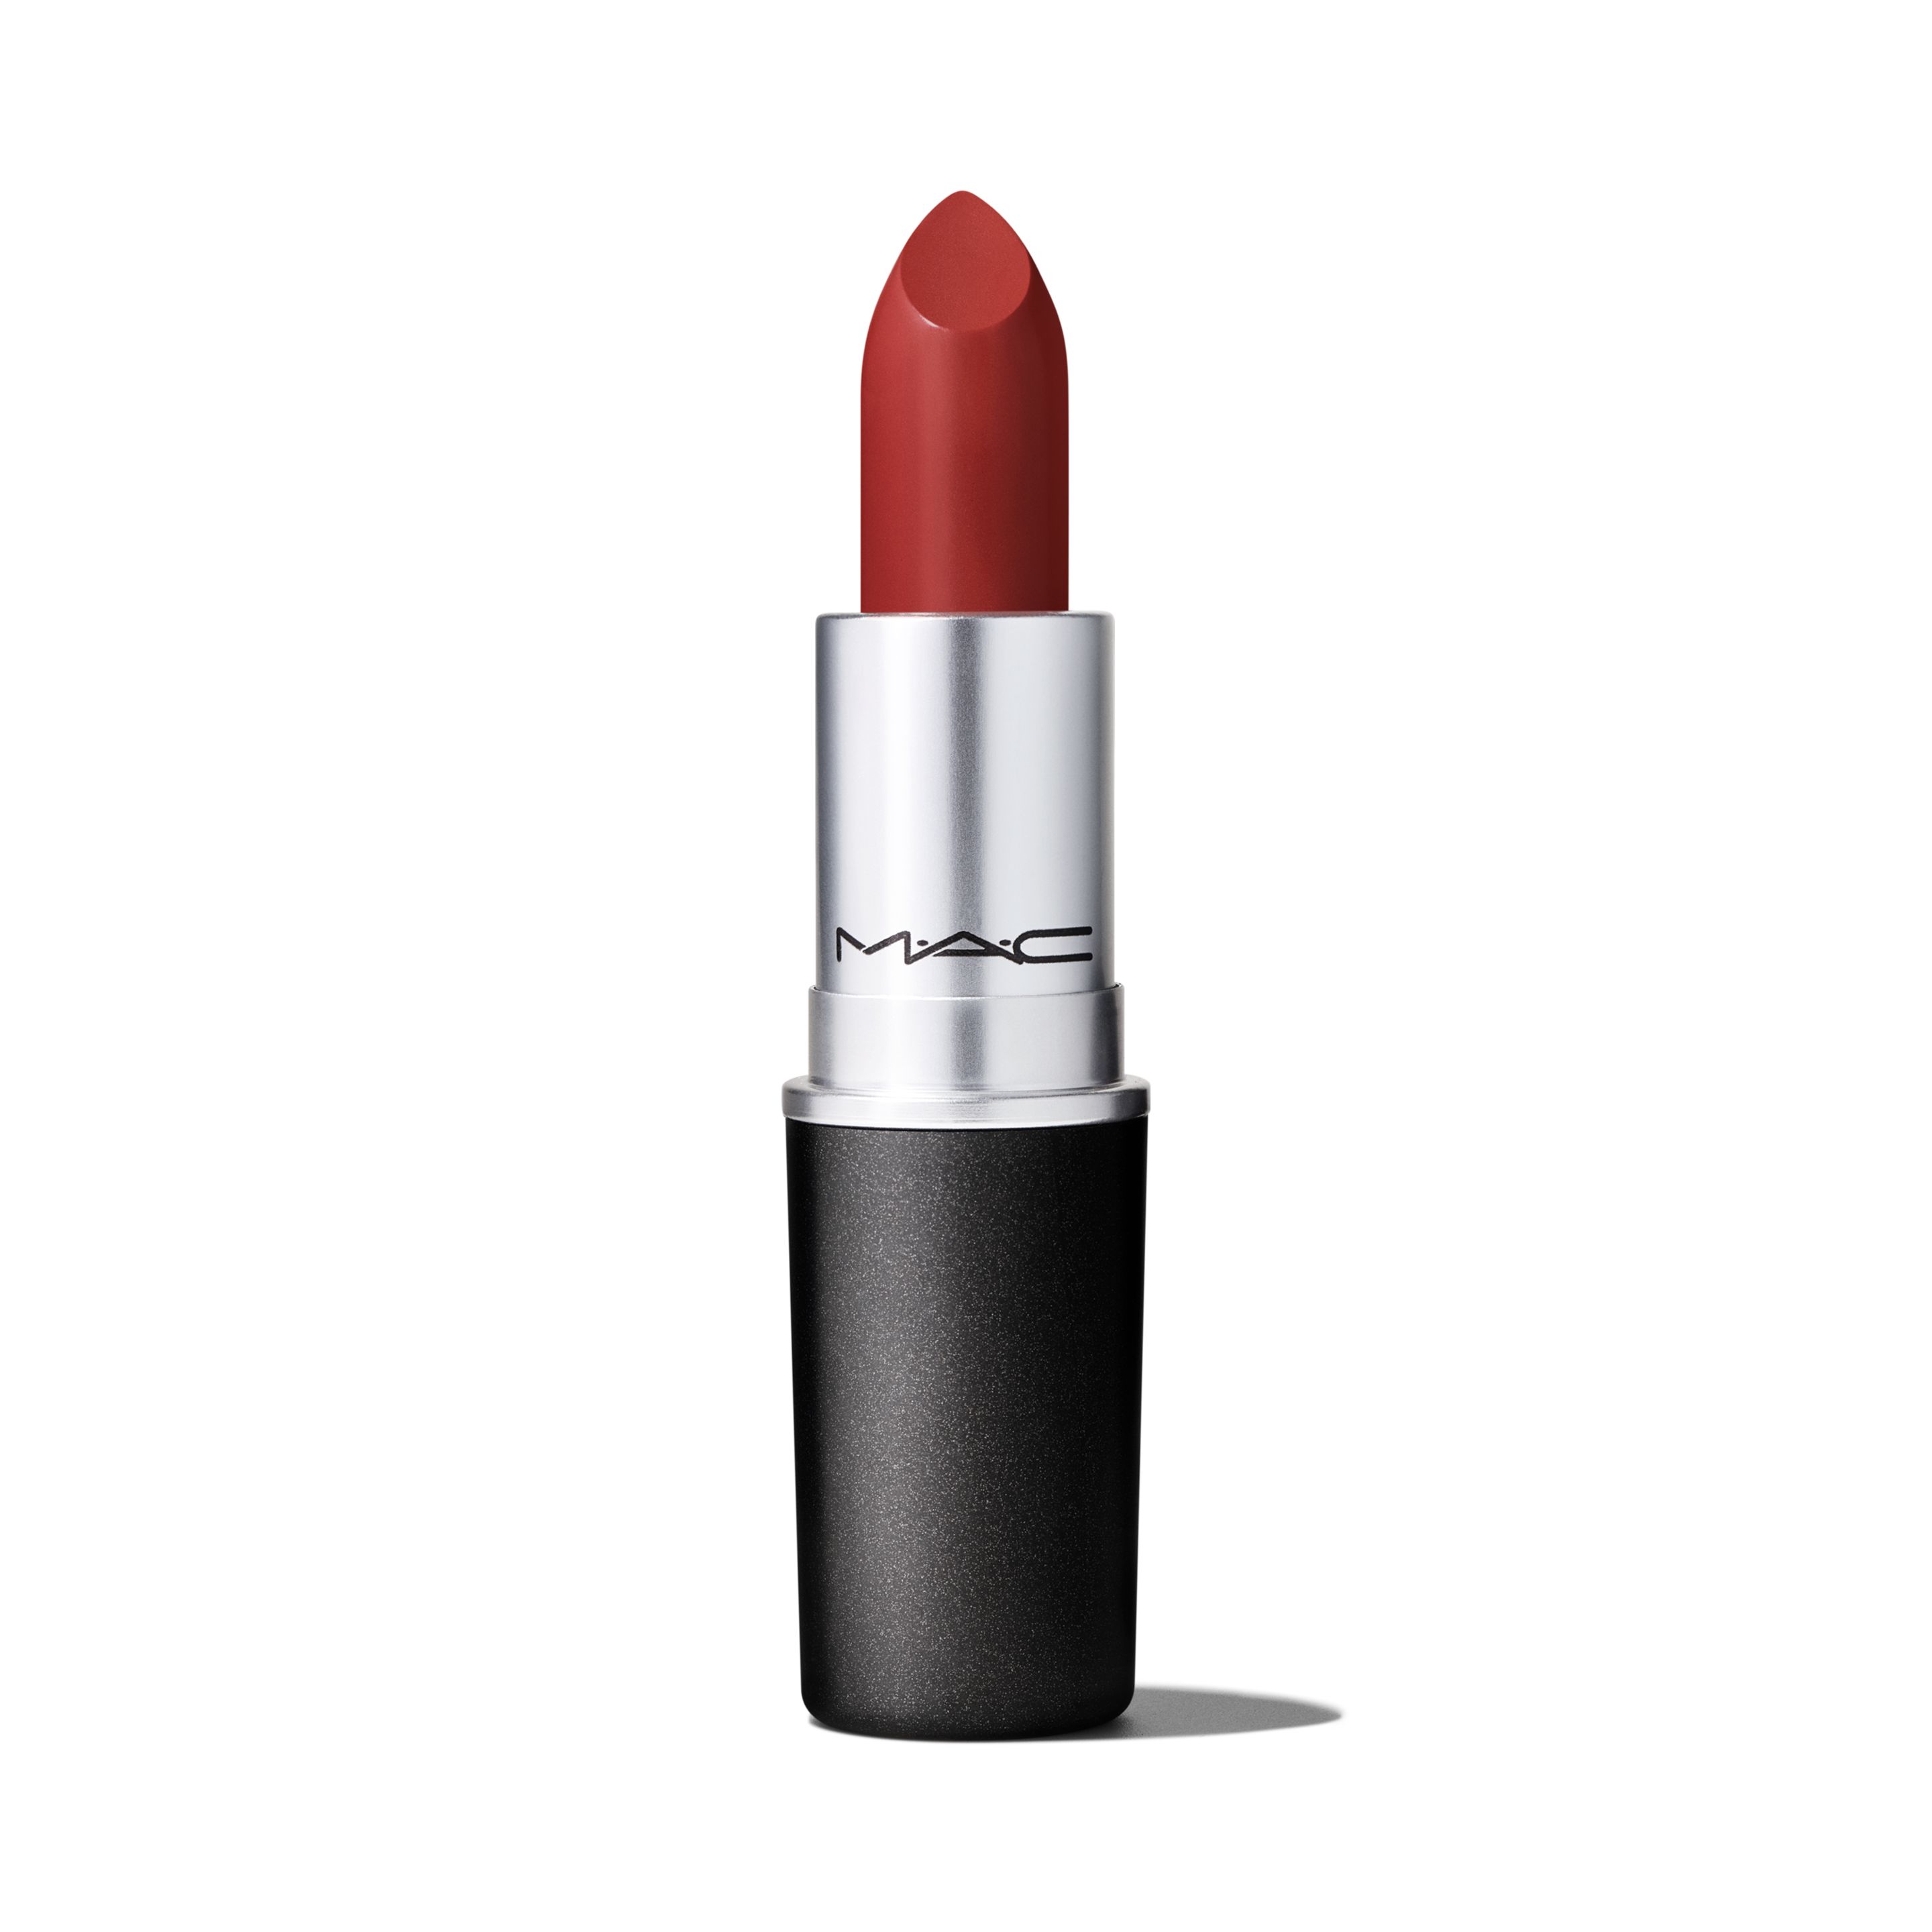 Помада для губ MAC Lipstick Amplified Creme кремовая, тон Dubonnet, 3 г помада для губ lollis lipstick тон 108 4 5г меркер косметика 48 опт